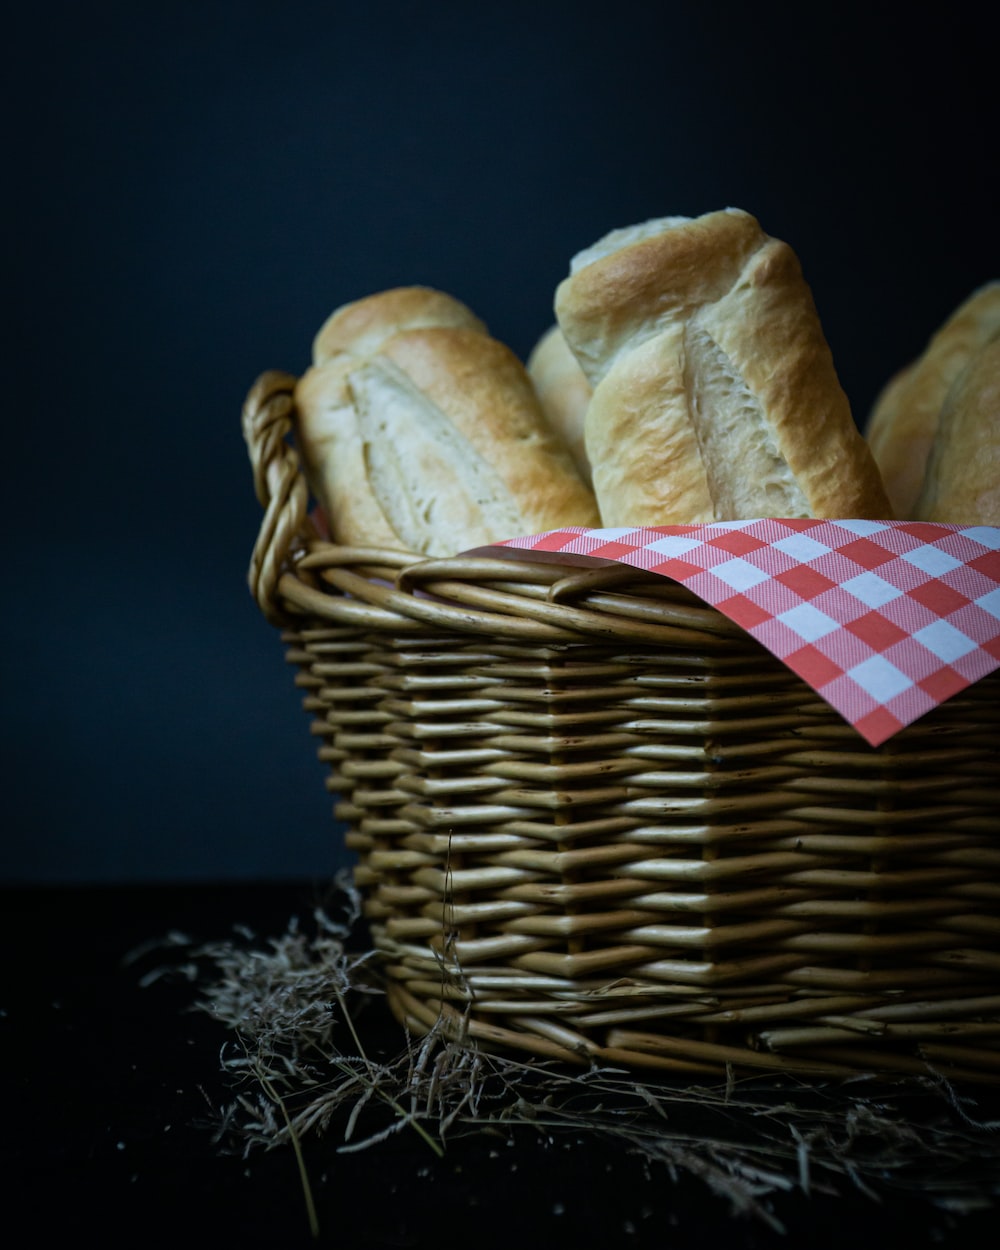 Le pain Immanuel peut vous faire vivre plus longtemps